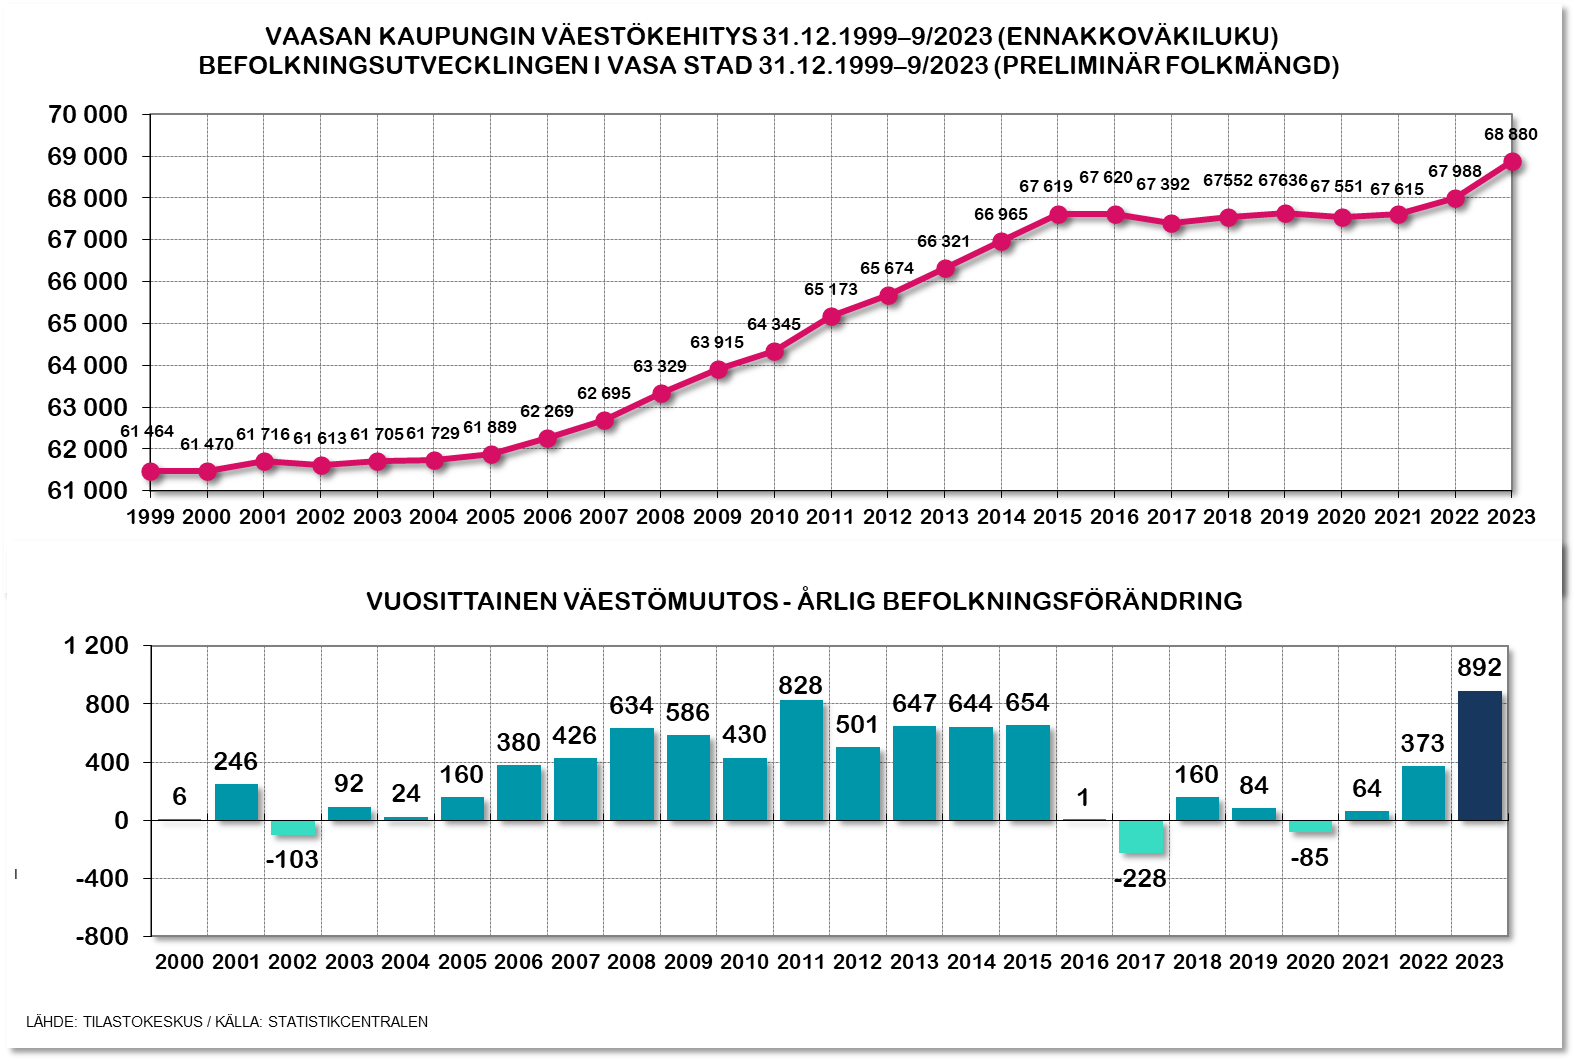 Kuvassa kuvataan Vaasan väestönkasvun kehitys vuosien 1999-2023 aikana.